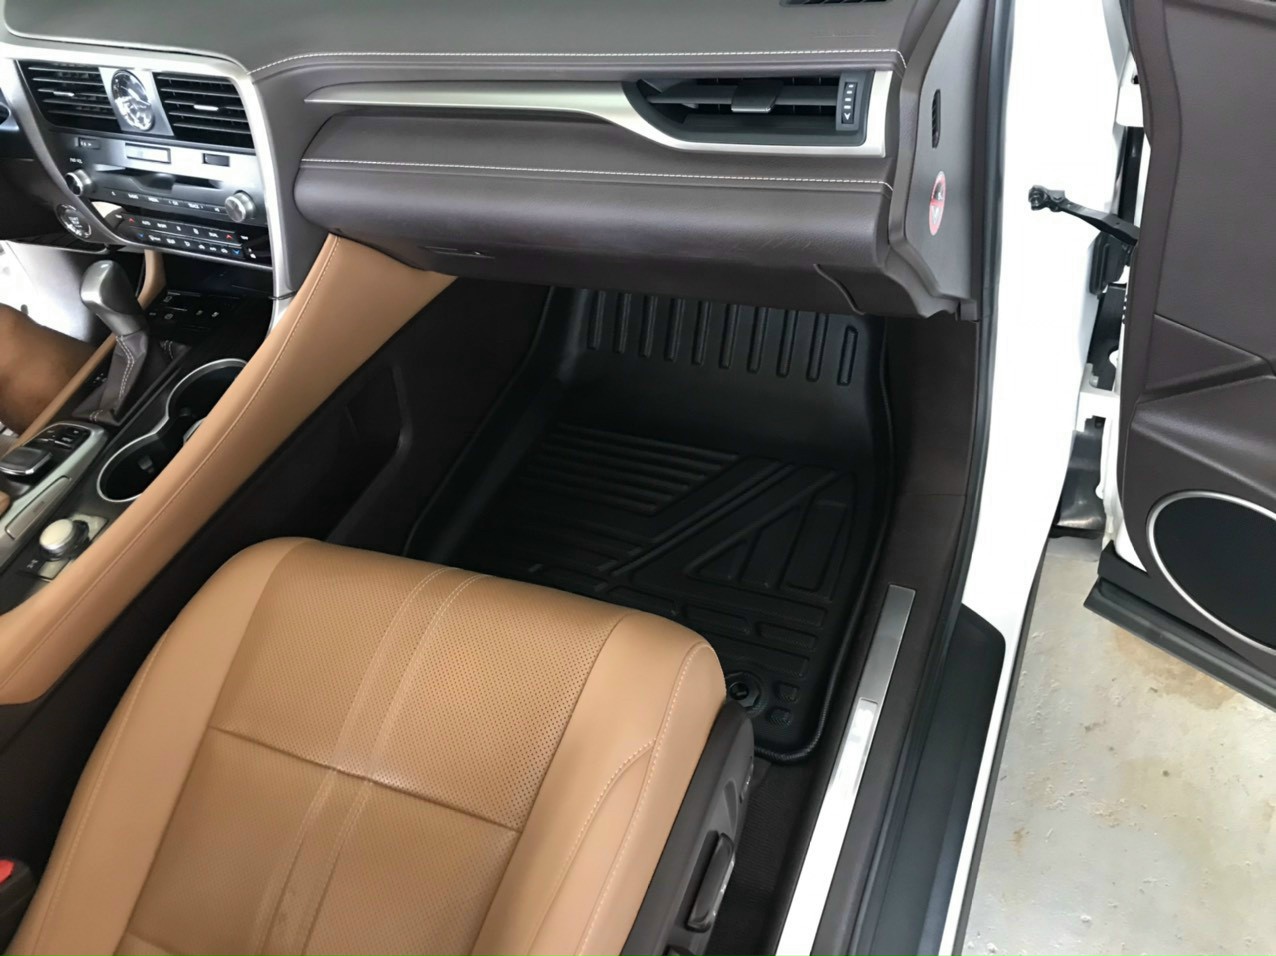 Thảm lót sàn xe ô tô Lexus RX 300-350 2016- 2022 Nhãn hiệu Macsim chất liệu nhựa TPE đúc khuôn cao cấp - màu đen (2 hàng ghế)